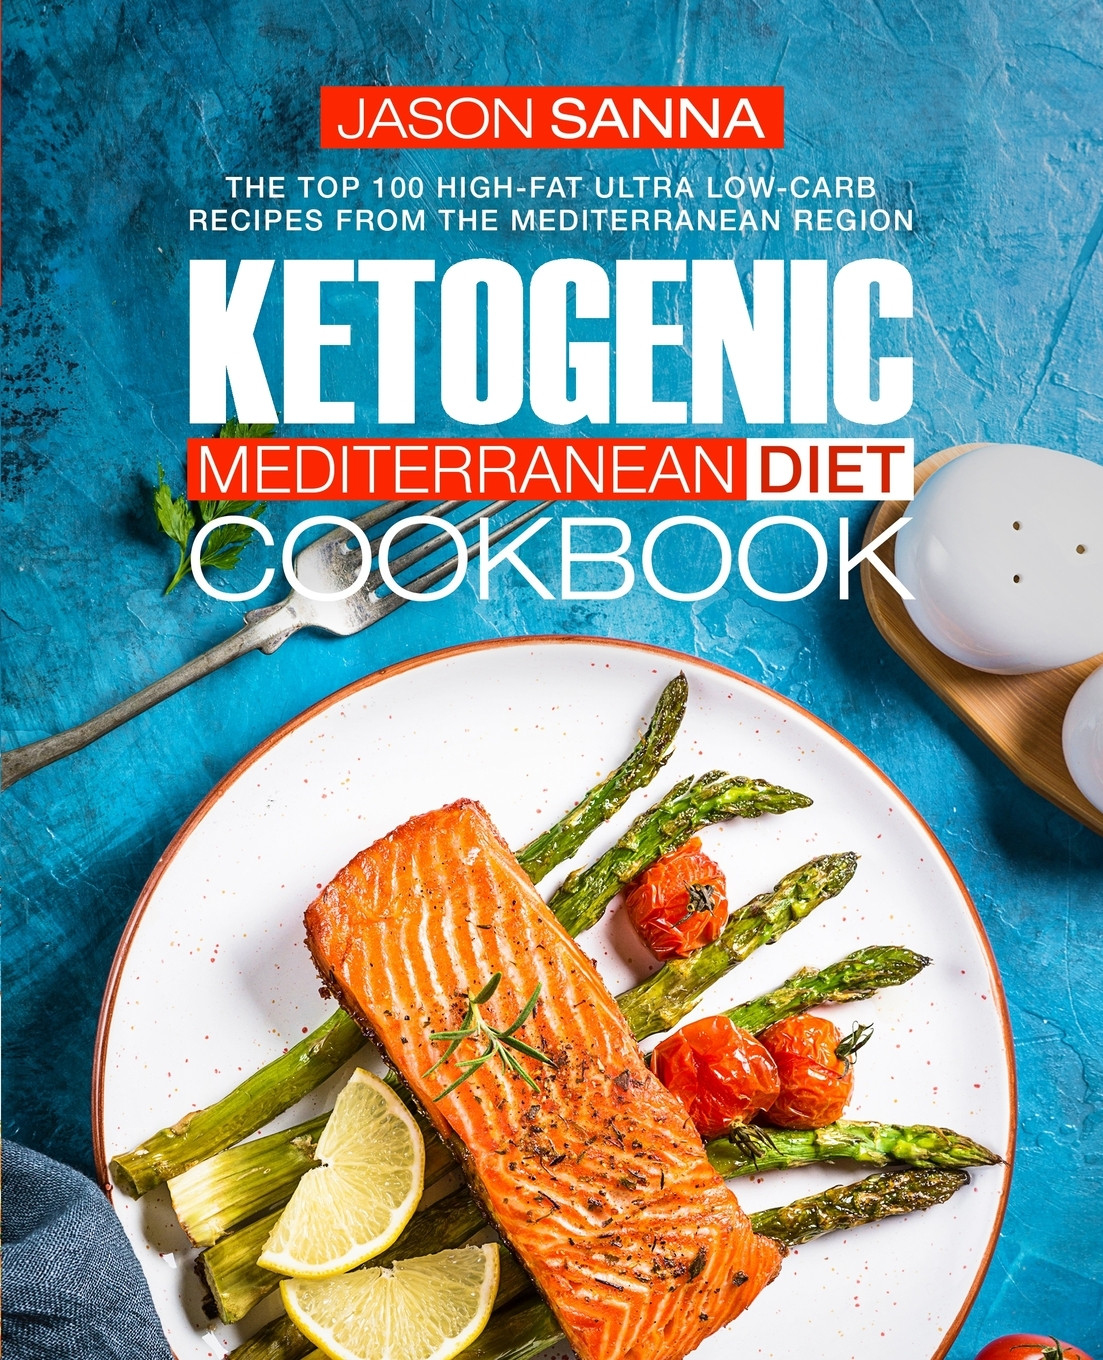 Best Mediterranean Diet Cookbooks Luxury Ketogenic Mediterranean Diet Cookbook the top 100 High